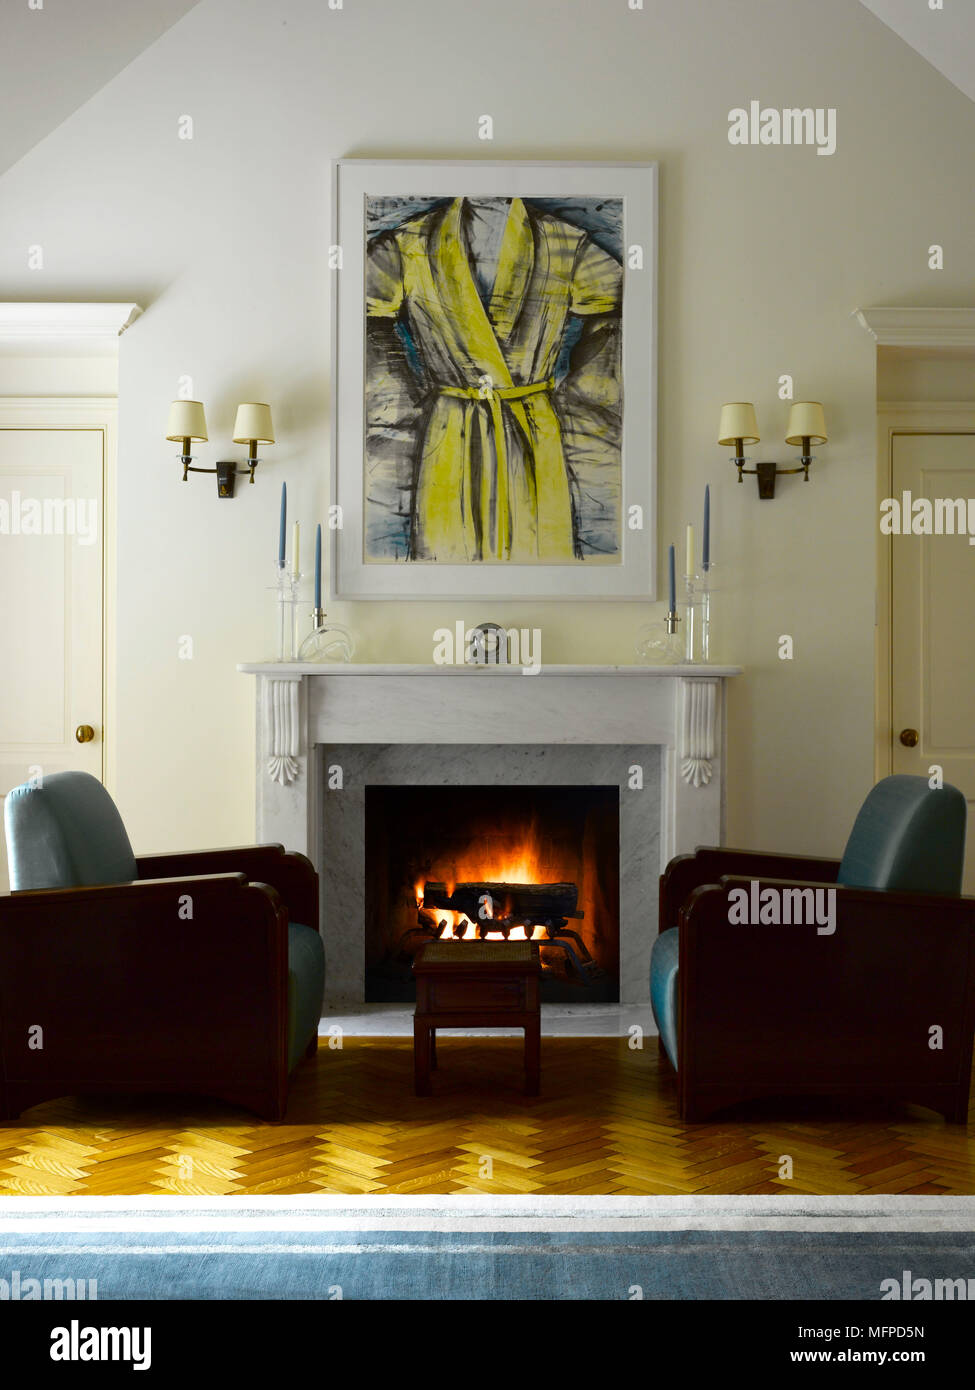 Deux fauteuils de style art déco de chaque côté de l'incendie allumé dans la cheminée de marbre, Bedford, New York, USA Banque D'Images